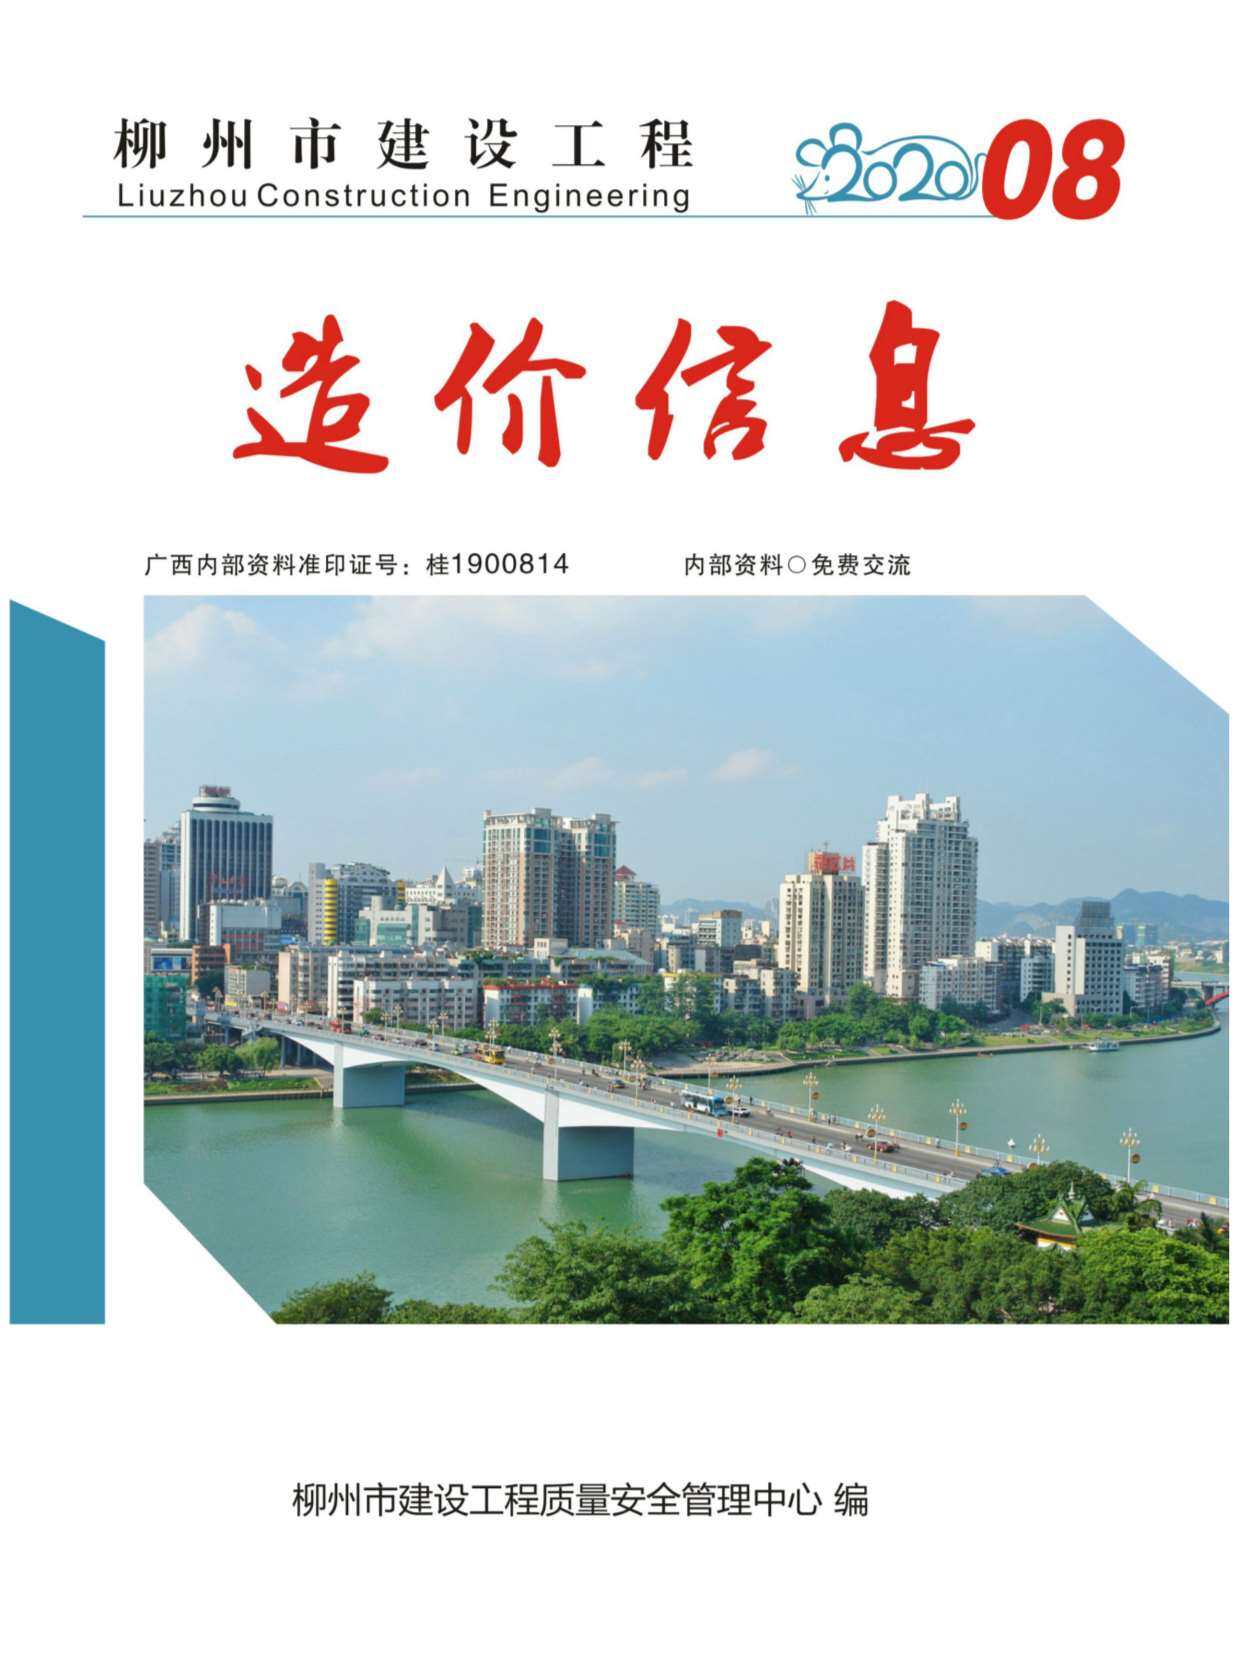 柳州市2020年8月工程造价信息期刊